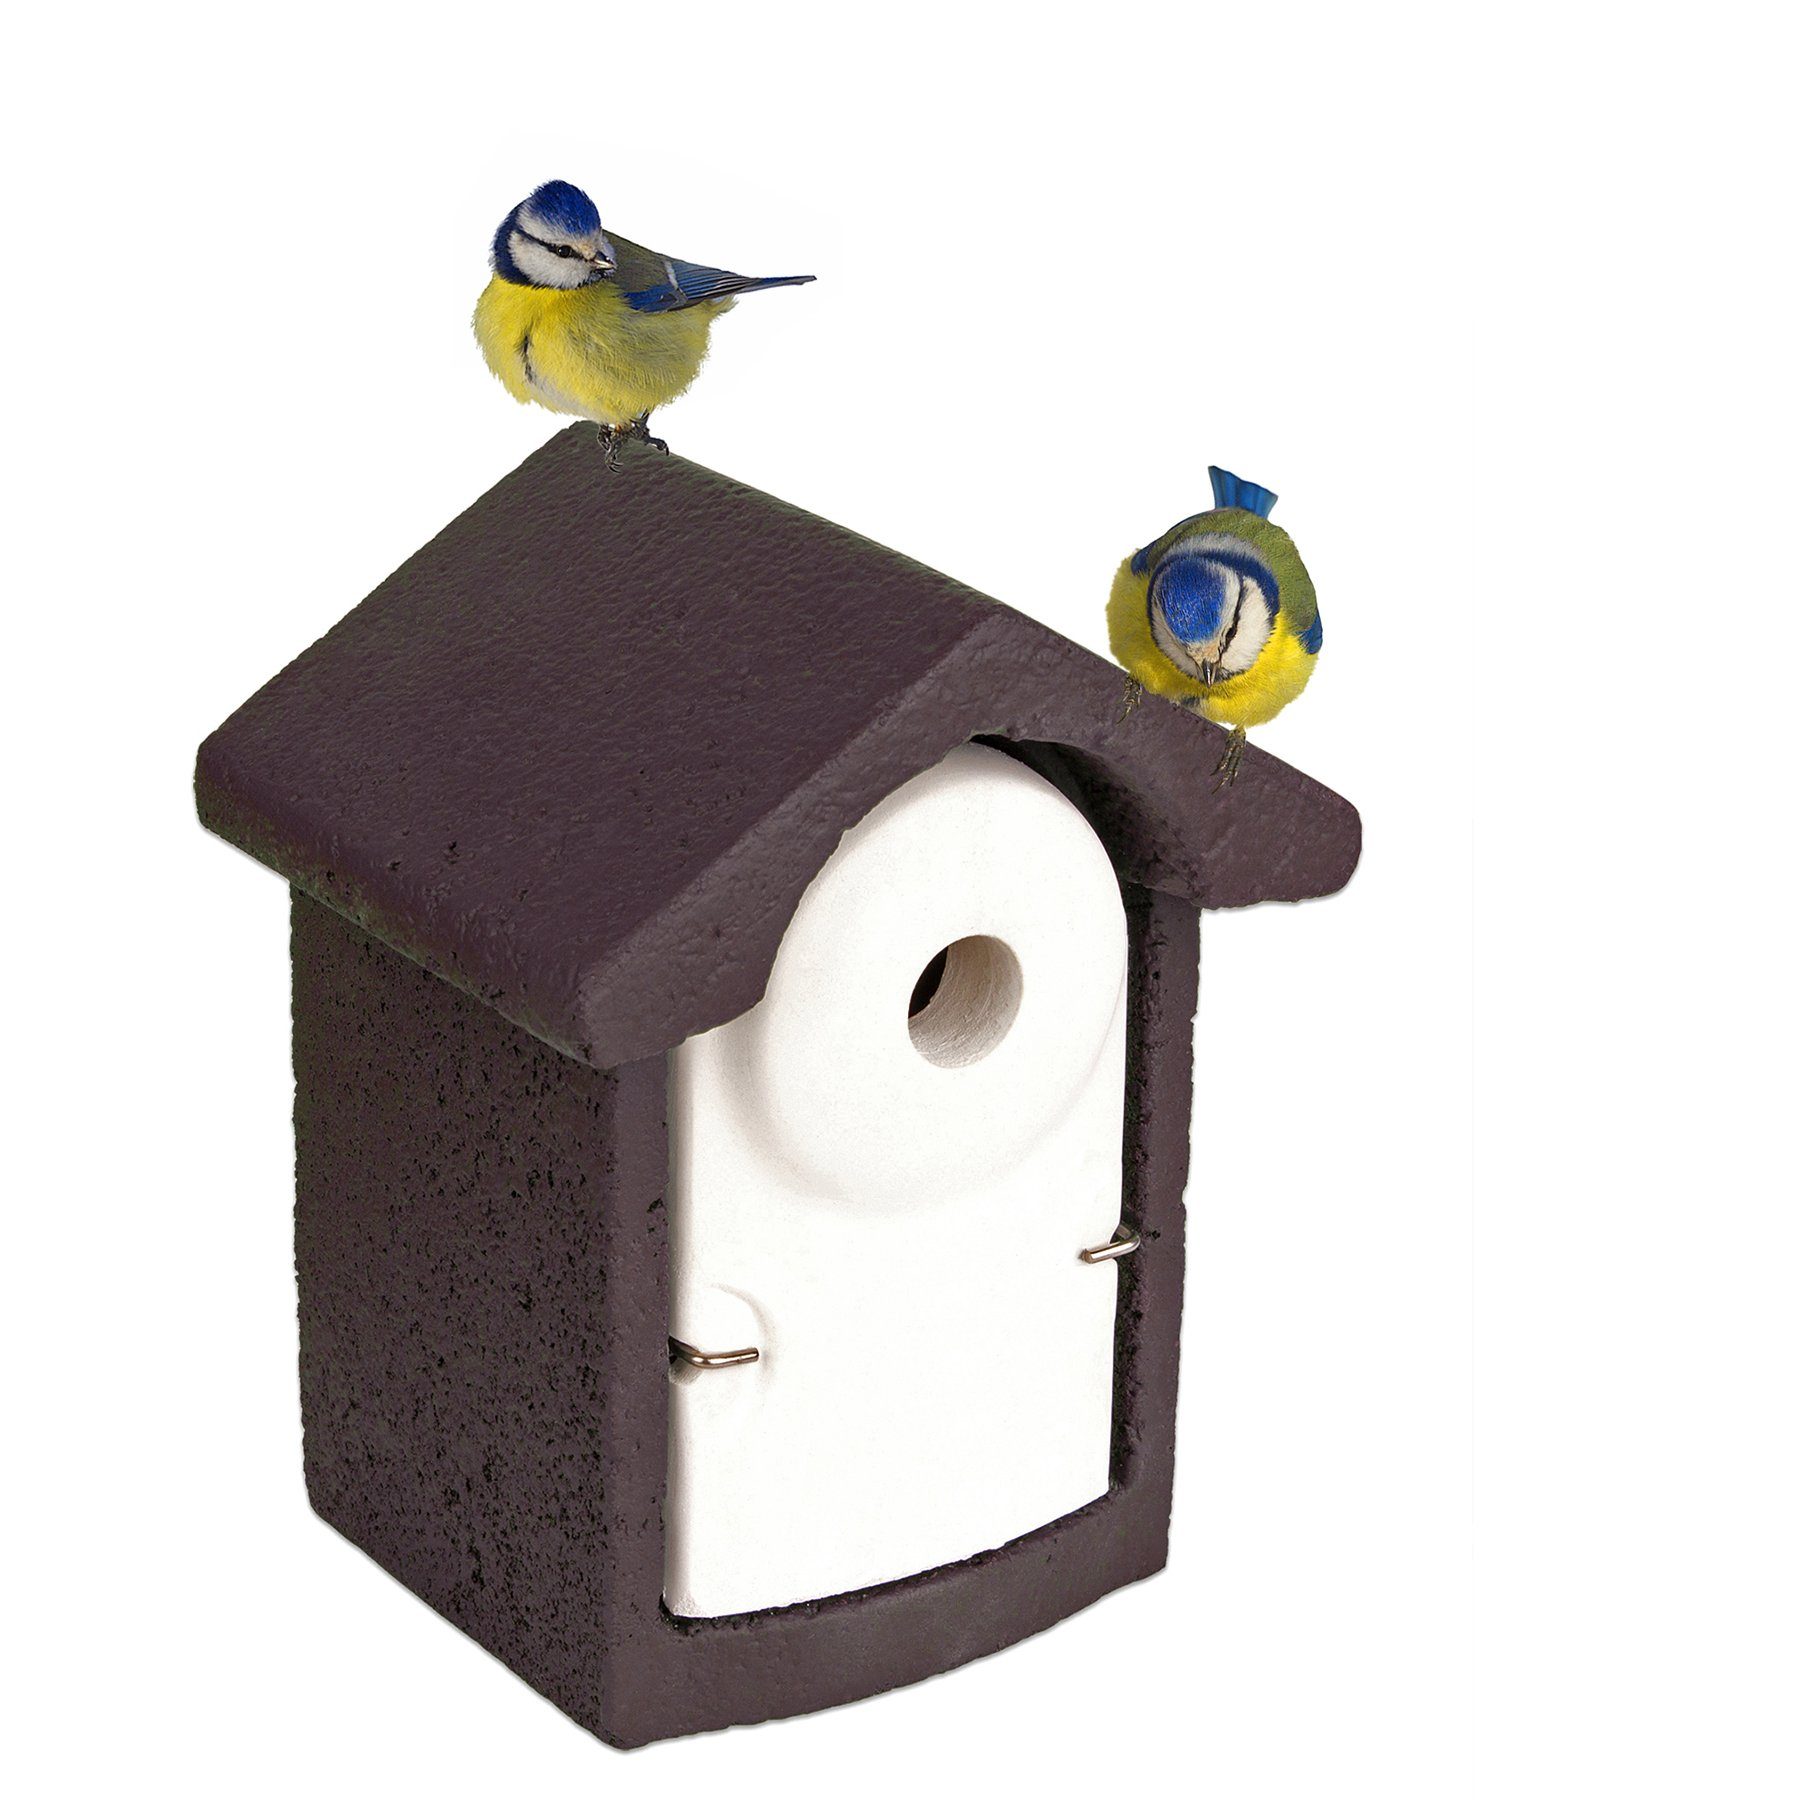 Nistkasten Vogelhaus Holz für Vögel Meisen Meisenkasten Nisthilfe zum Aufhängen 